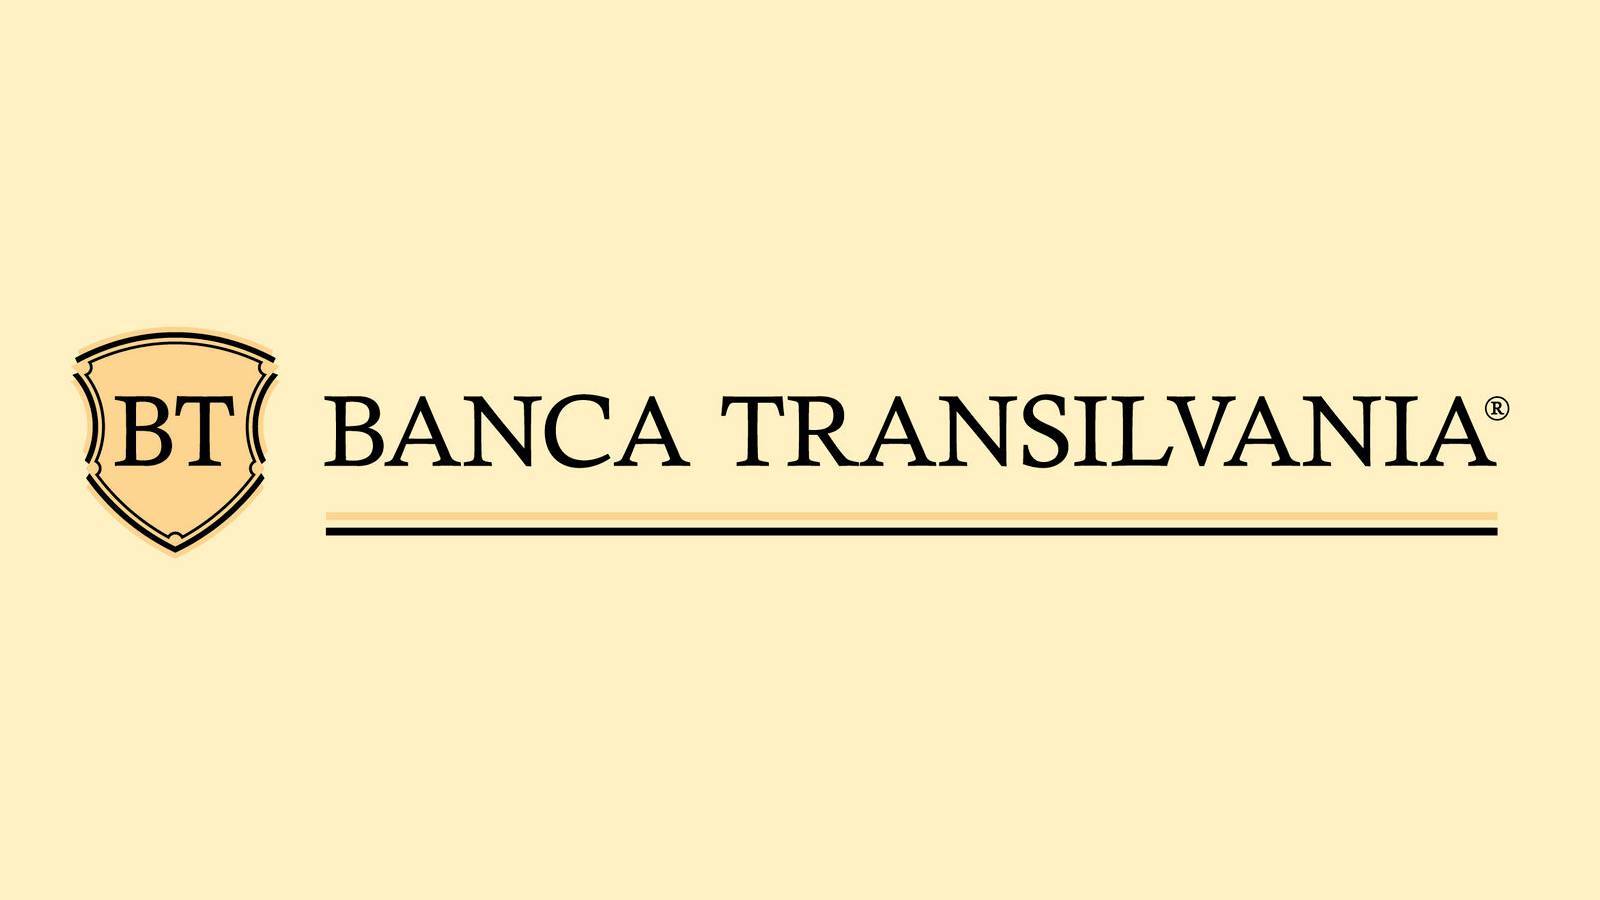 BANCA Transilvania Explicatii Oficiale IMPORTANTE Aduse ATENTIA Tuturor Clientilor Romani